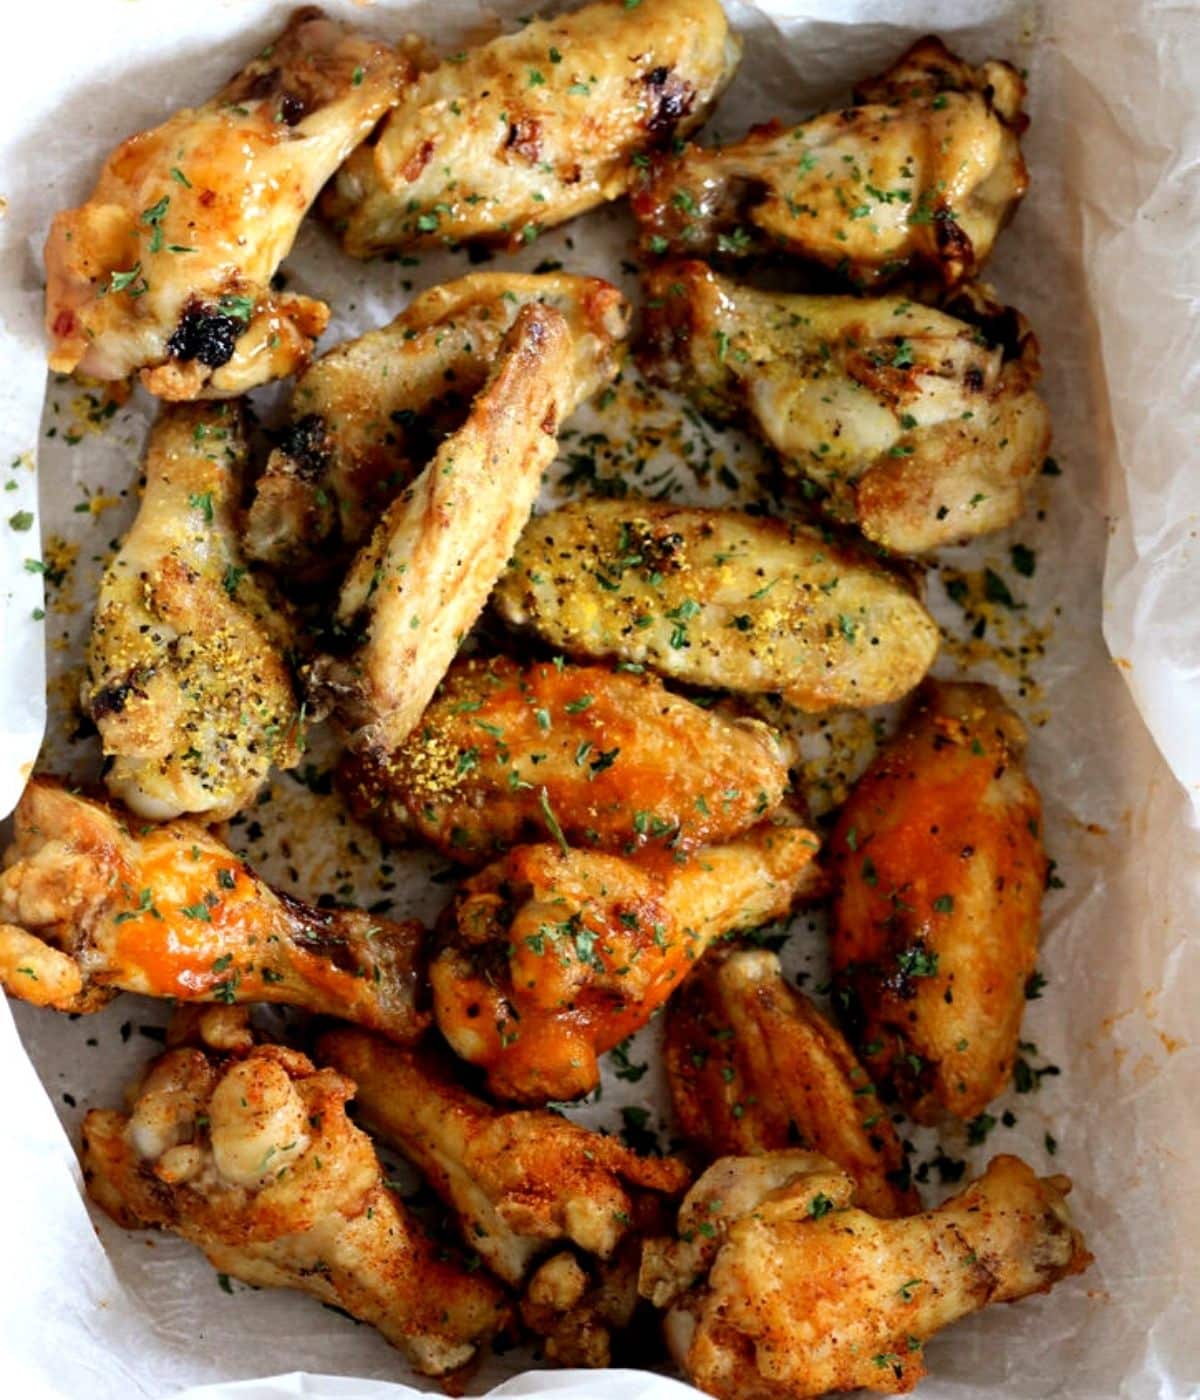 crisp air fryer wings with seasonings and parsley on top